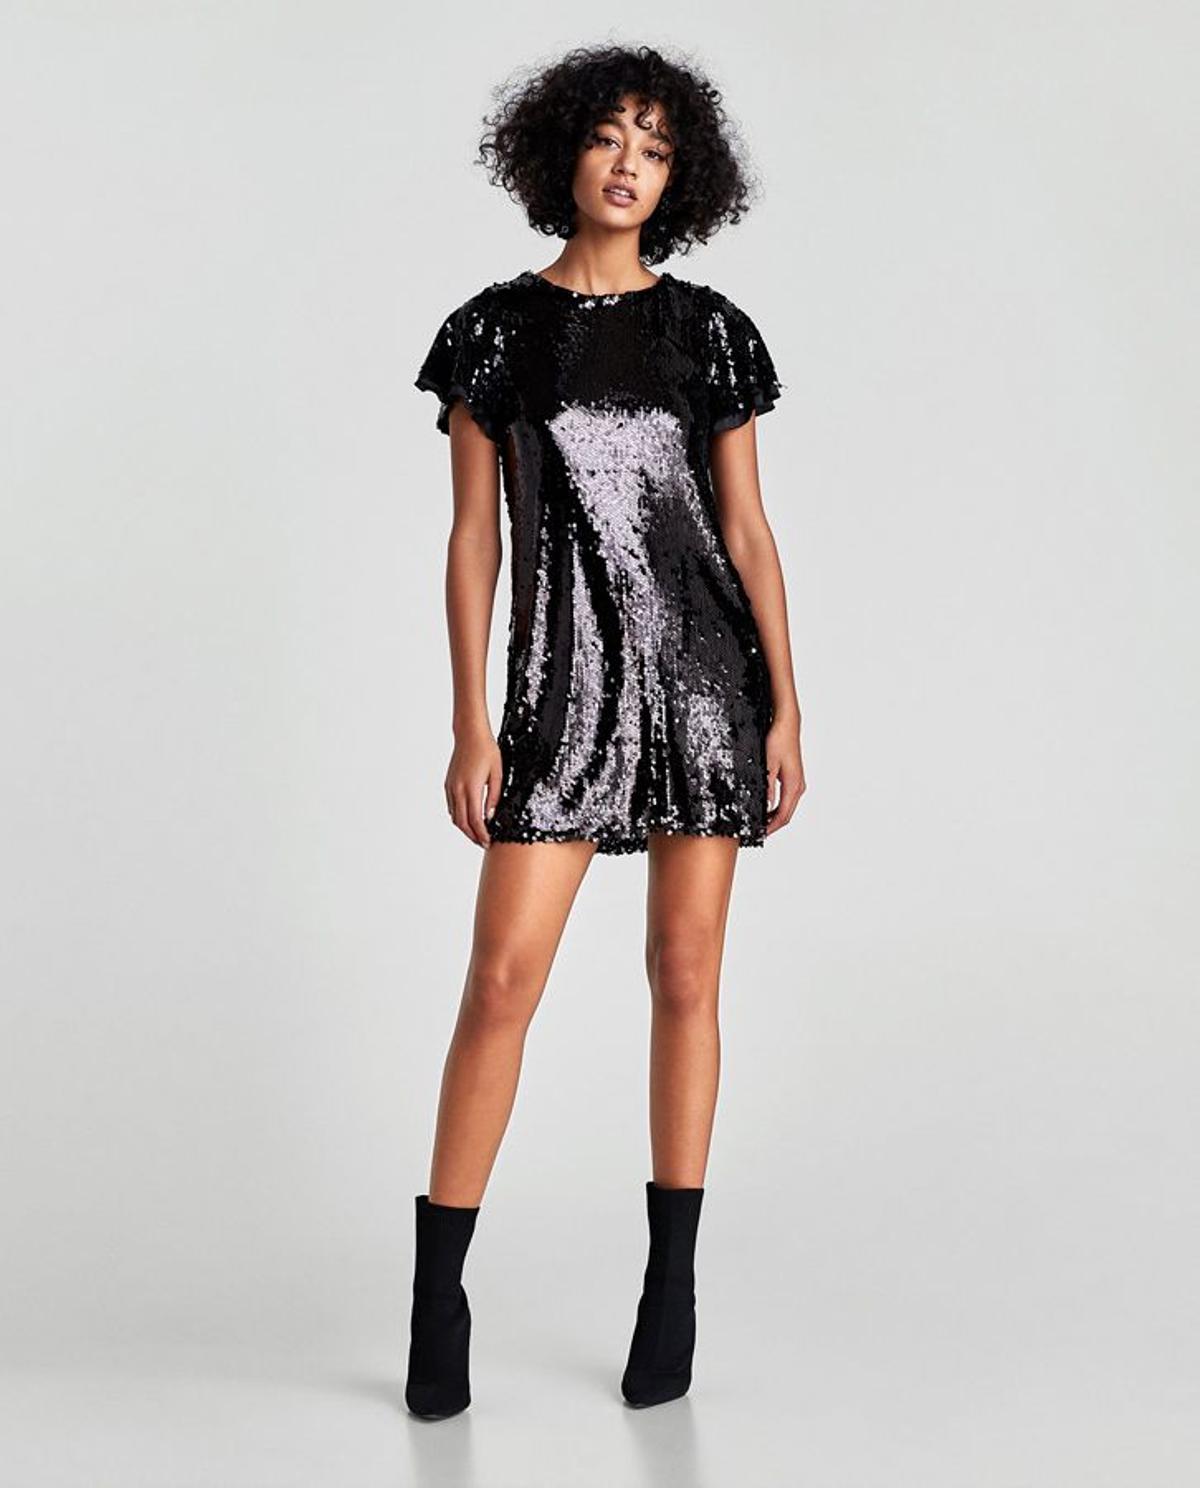 Colección de fiesta de Zara: vestido corto de lentejuelas